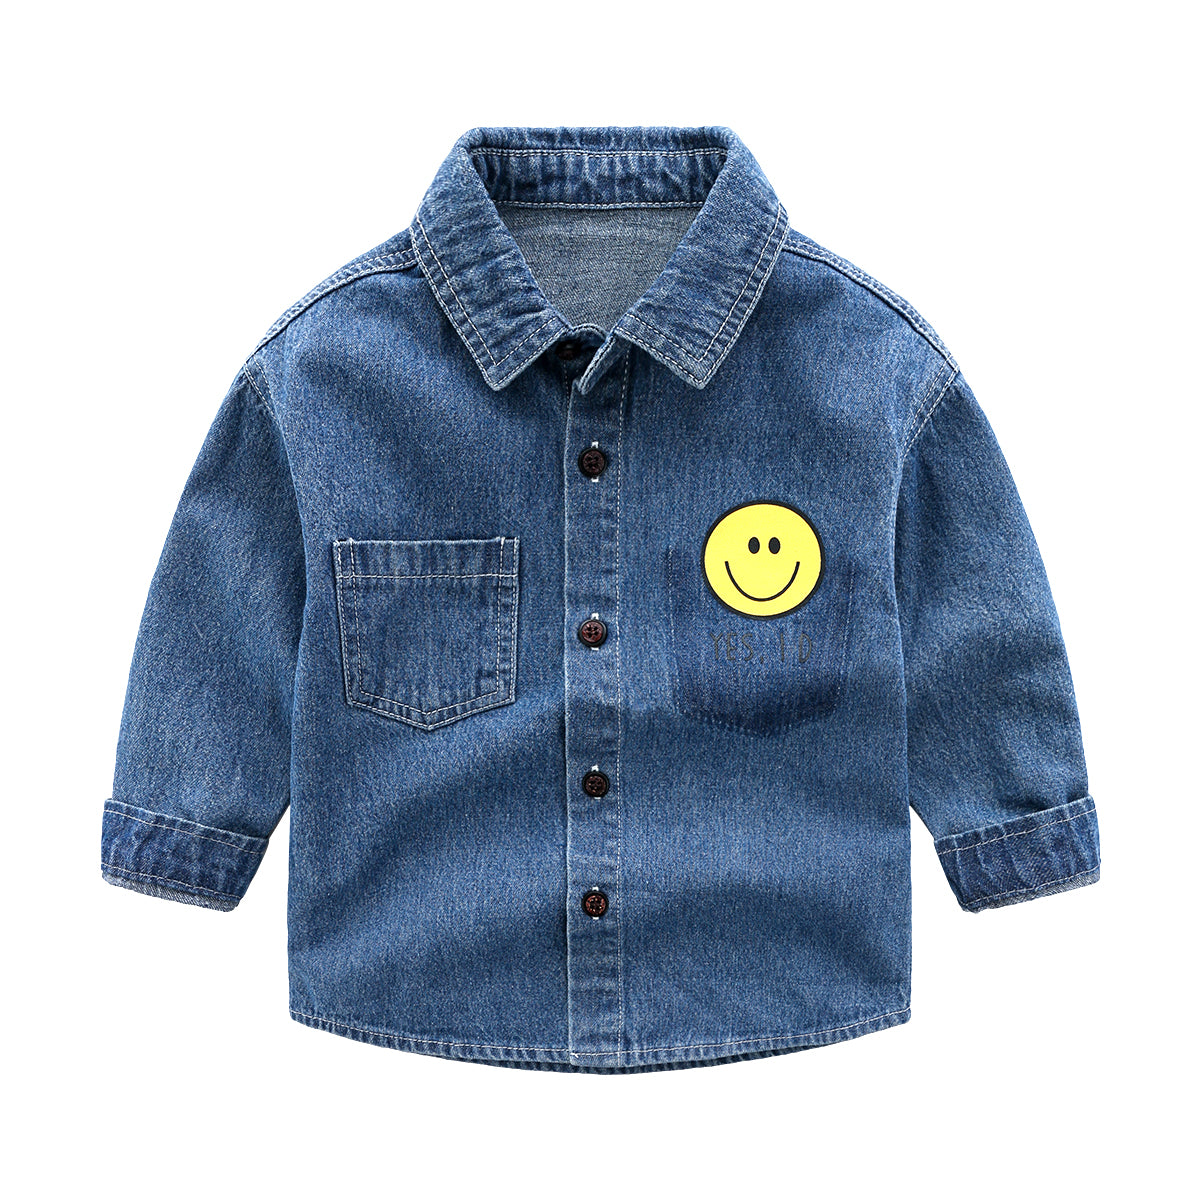 [513493] - Baju Atasan Kemeja Anak - Motif Smile Pouch